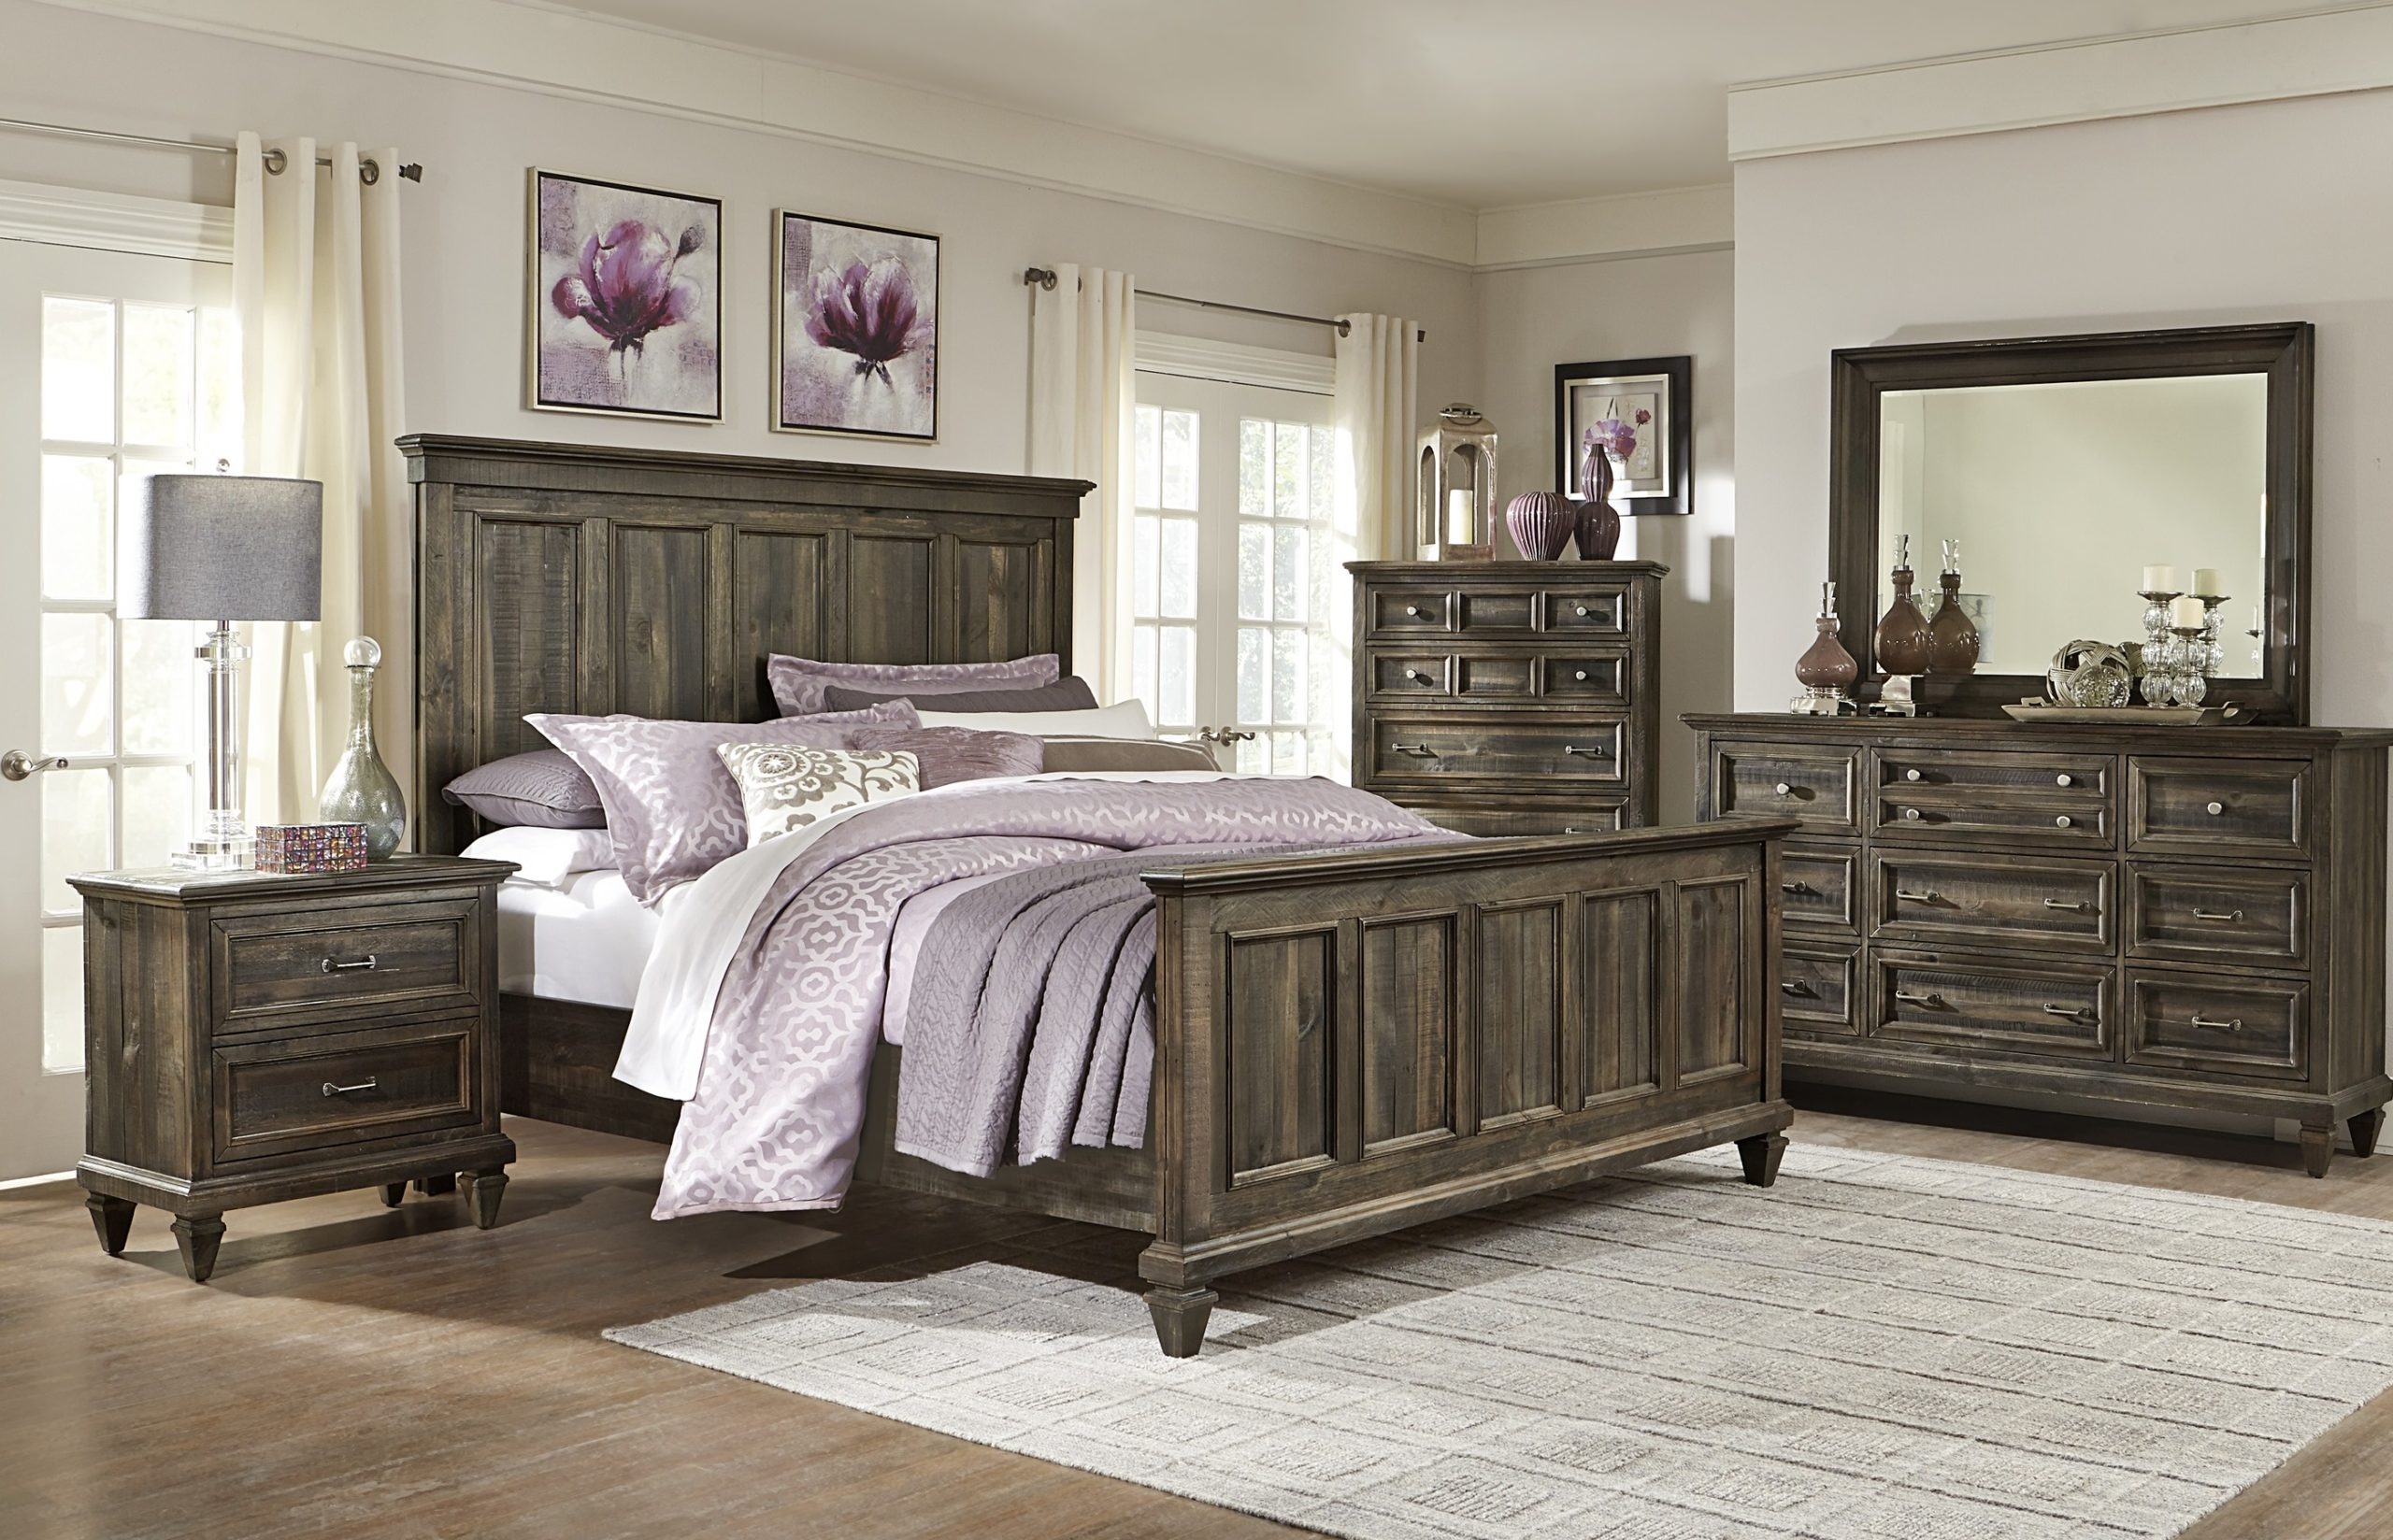 overstock rustic bedroom furniture